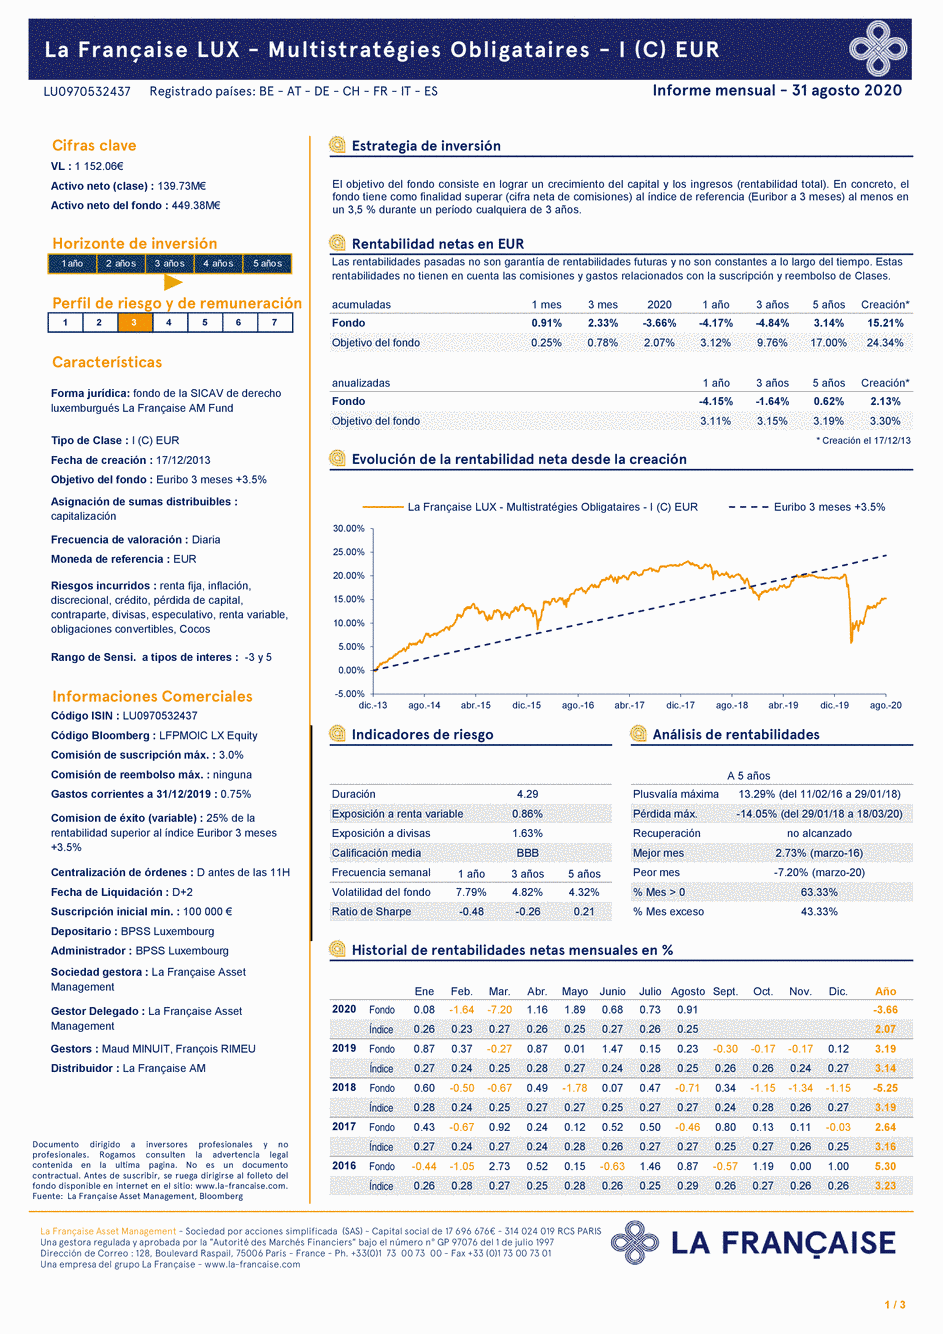 Reporting La Française LUX - Multistratégies Obligataires - I (C) EUR - 31/12/2018 - Espagnol